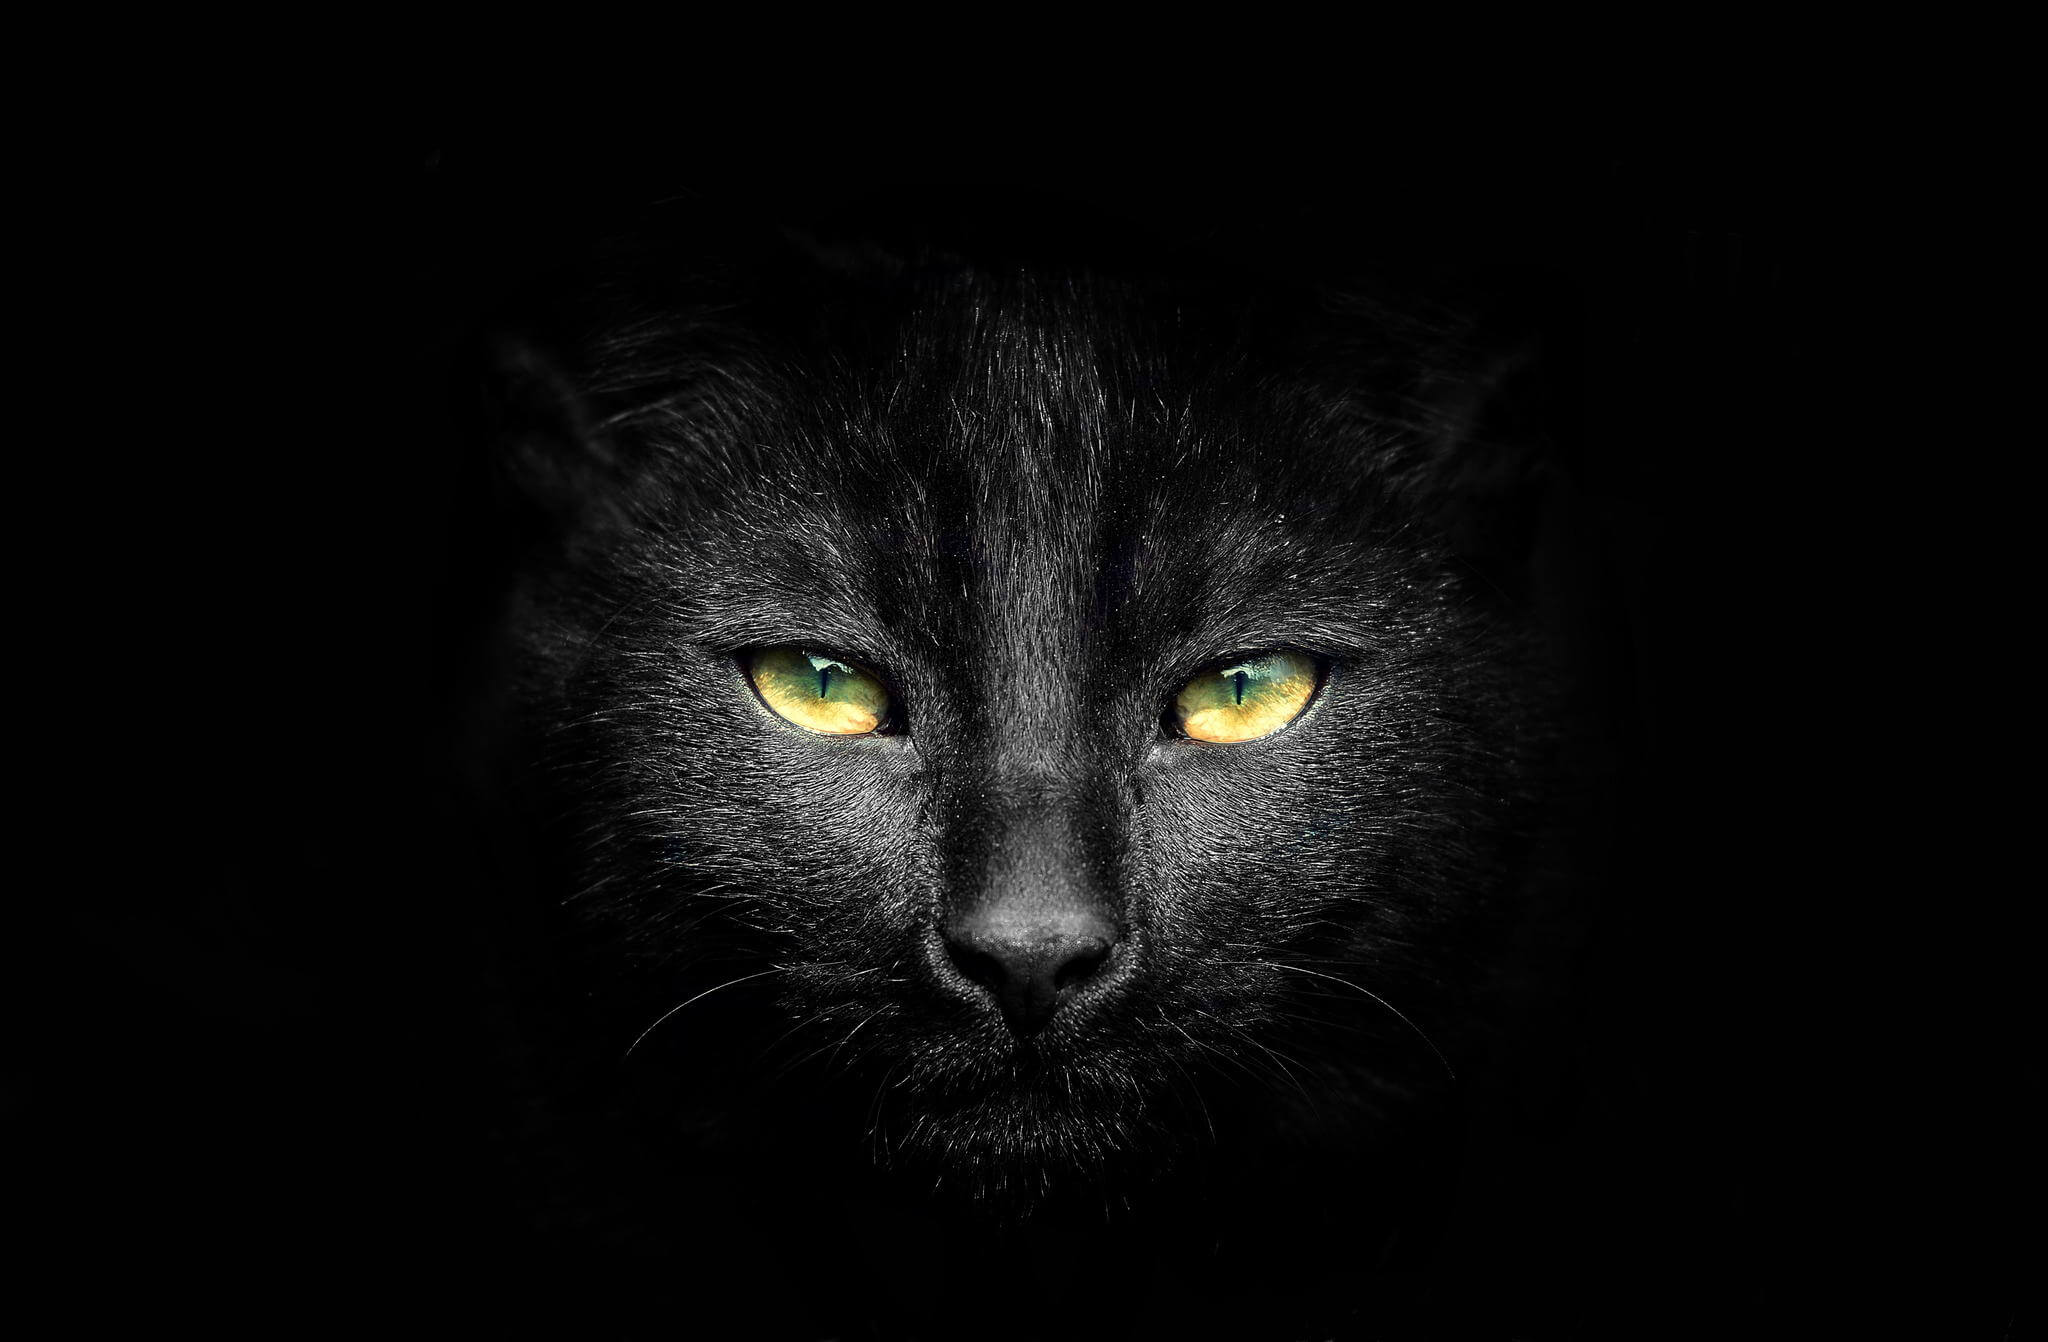 الحقيقة وراء القطط السوداء والجن "بين الحقيقة والخرافة"